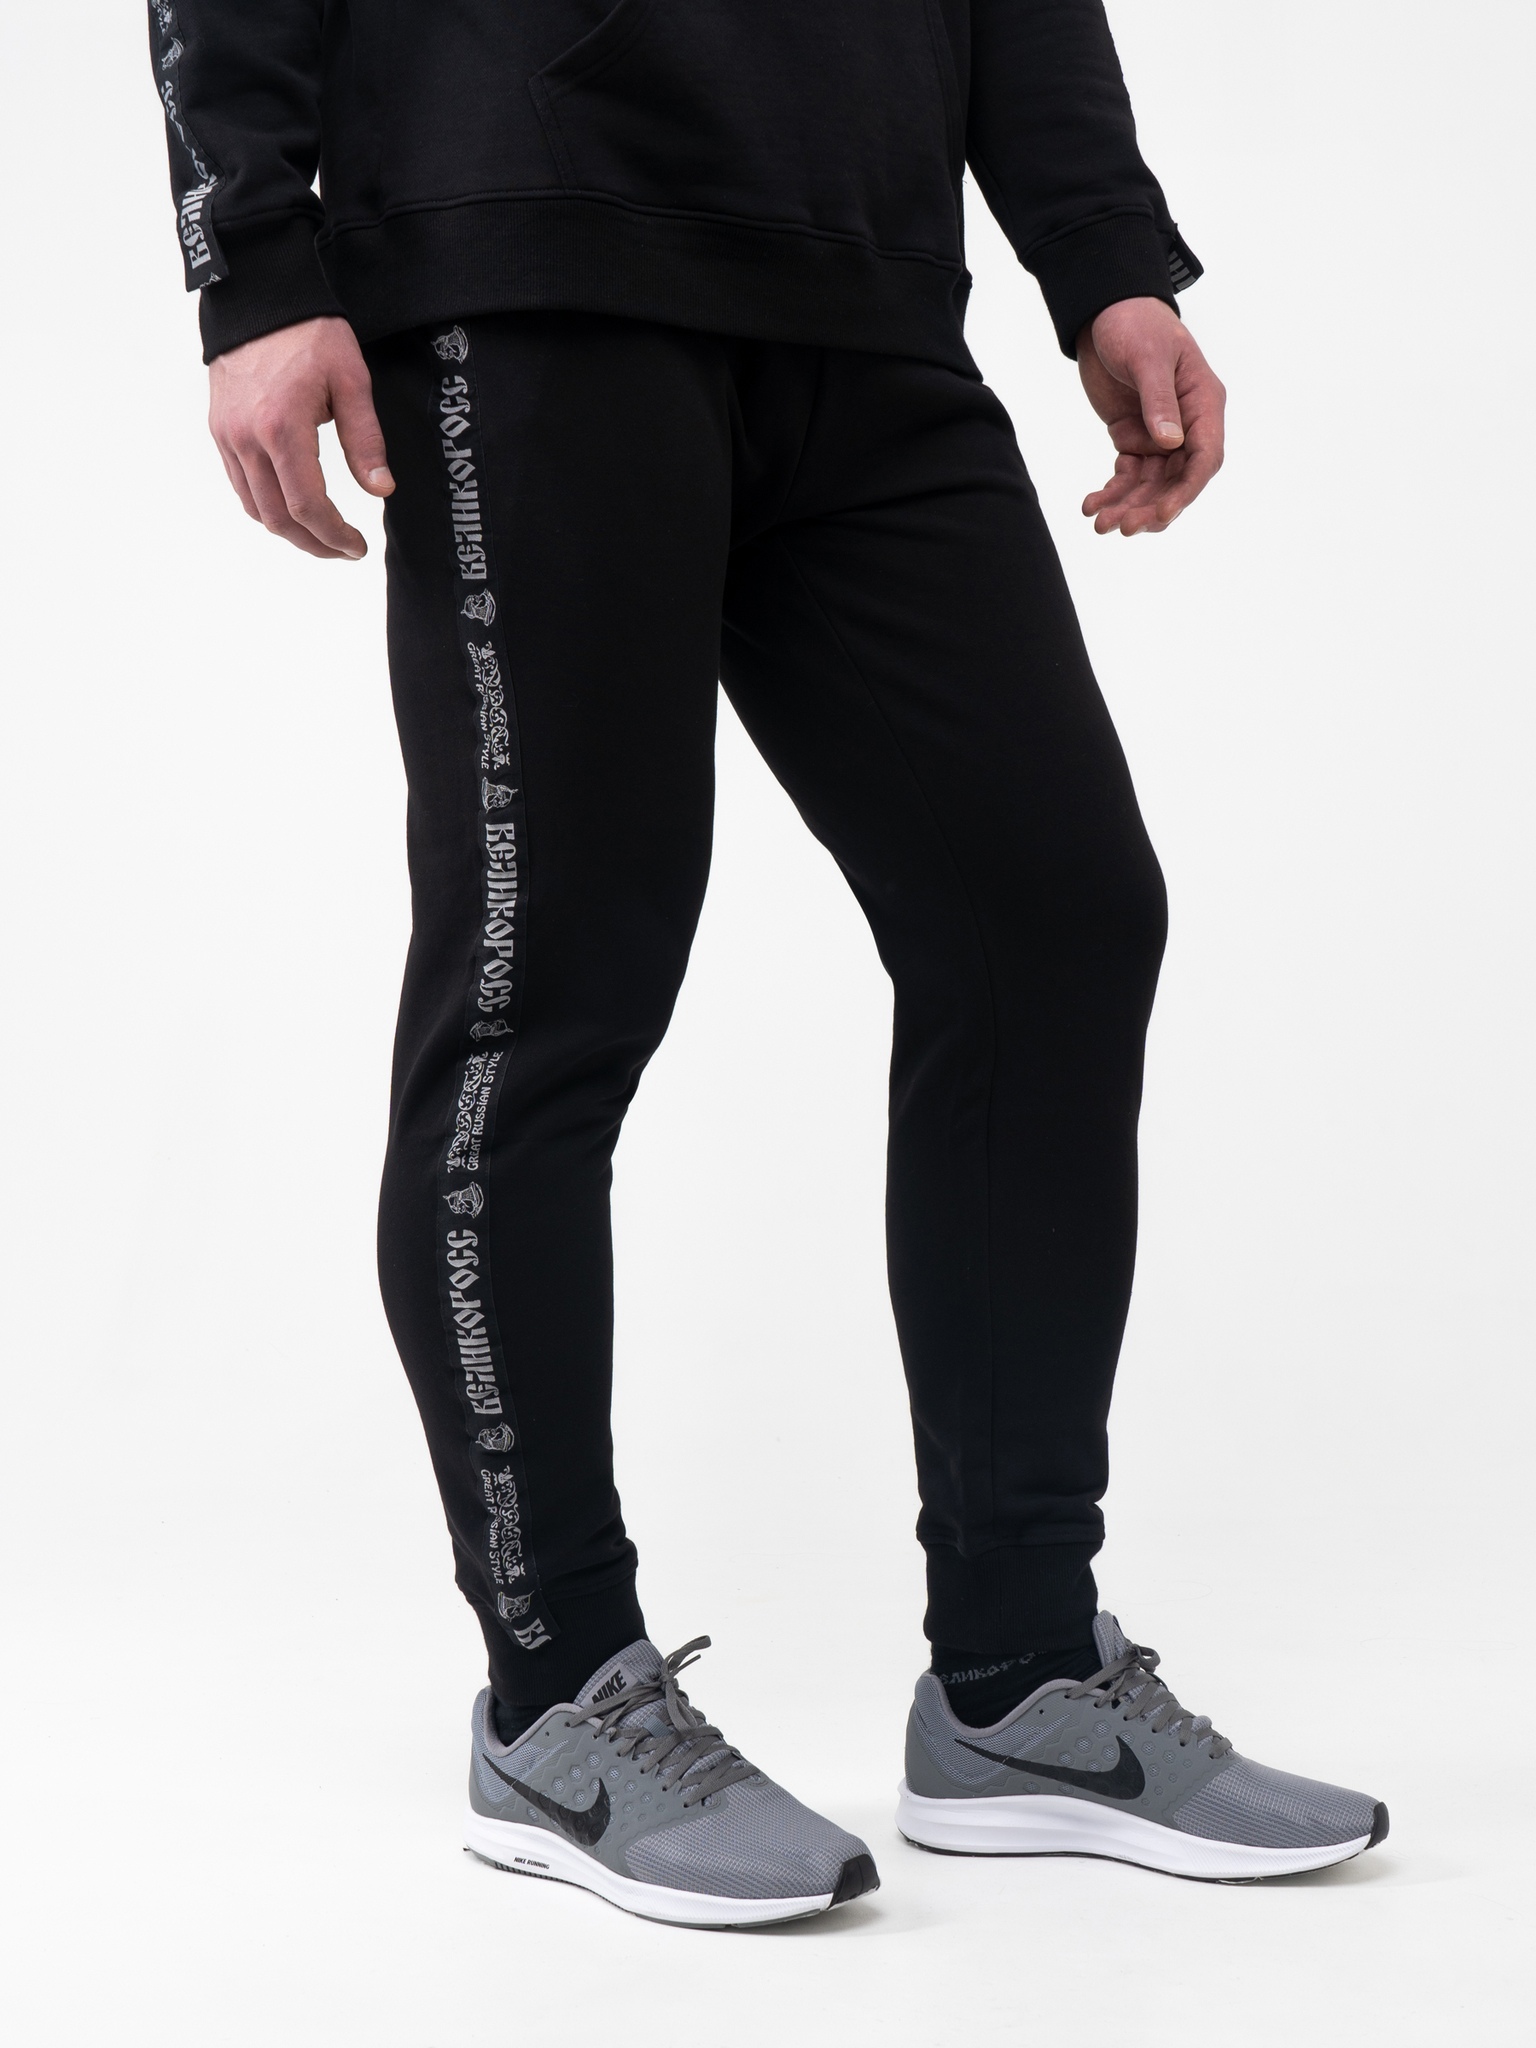 Спортивные брюки мужские Великоросс BM черные 54 RU